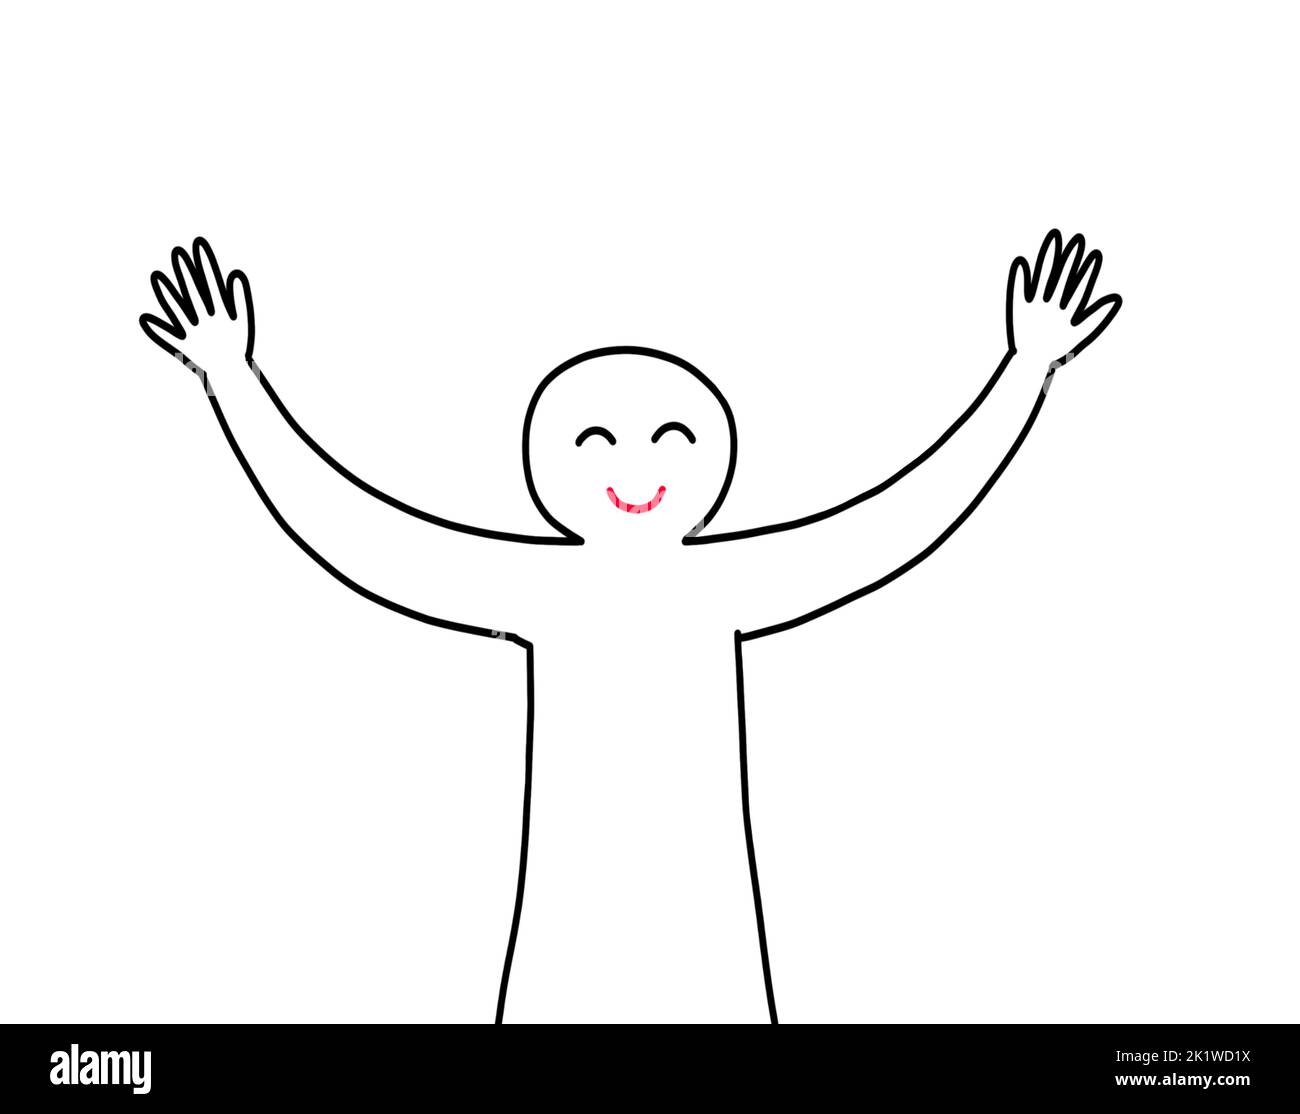 Una persona que levanta los brazos y manos arriba gesto sonriendo. Emoción feliz positiva. Libertad, relajación, confianza en sí mismo y concepto de bienestar. Foto de stock